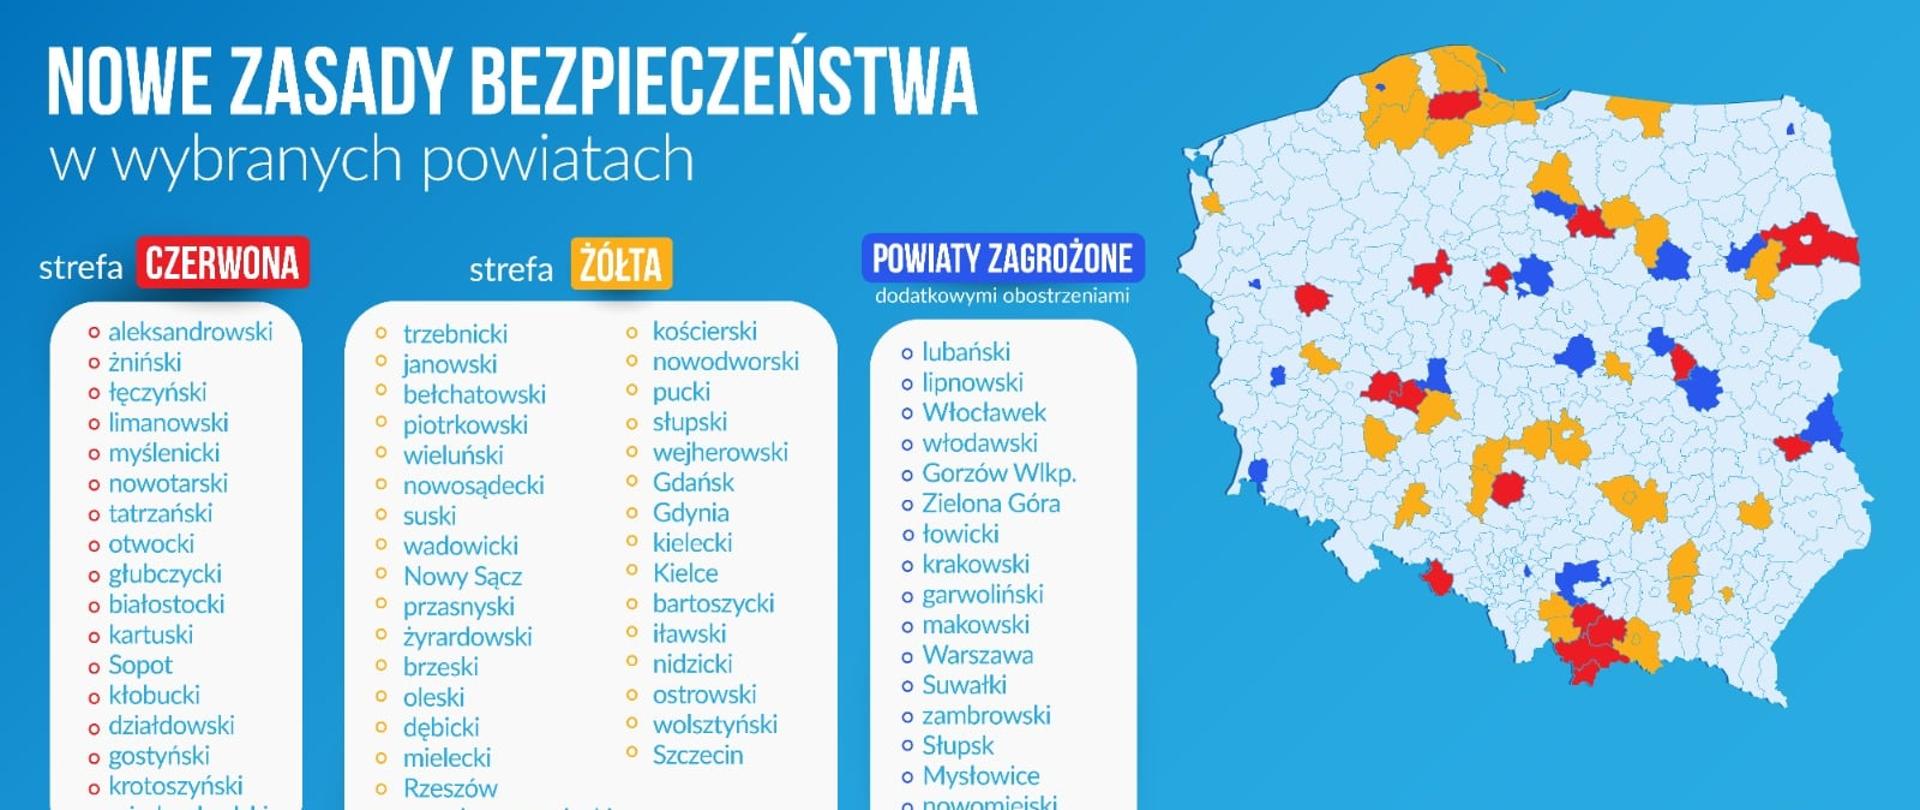 Grafika przedstawiająca nową mapę ministerstwa zdrowia z aktualnymi powiatami wpisanymi do strefy żółtej, czerwonej oraz alertowej. Po prawej stronie widać kontur Polski z zaznaczonymi powiatami, po prawej listę z nazwami powiatów na ww. liście. Tło błękitne. 